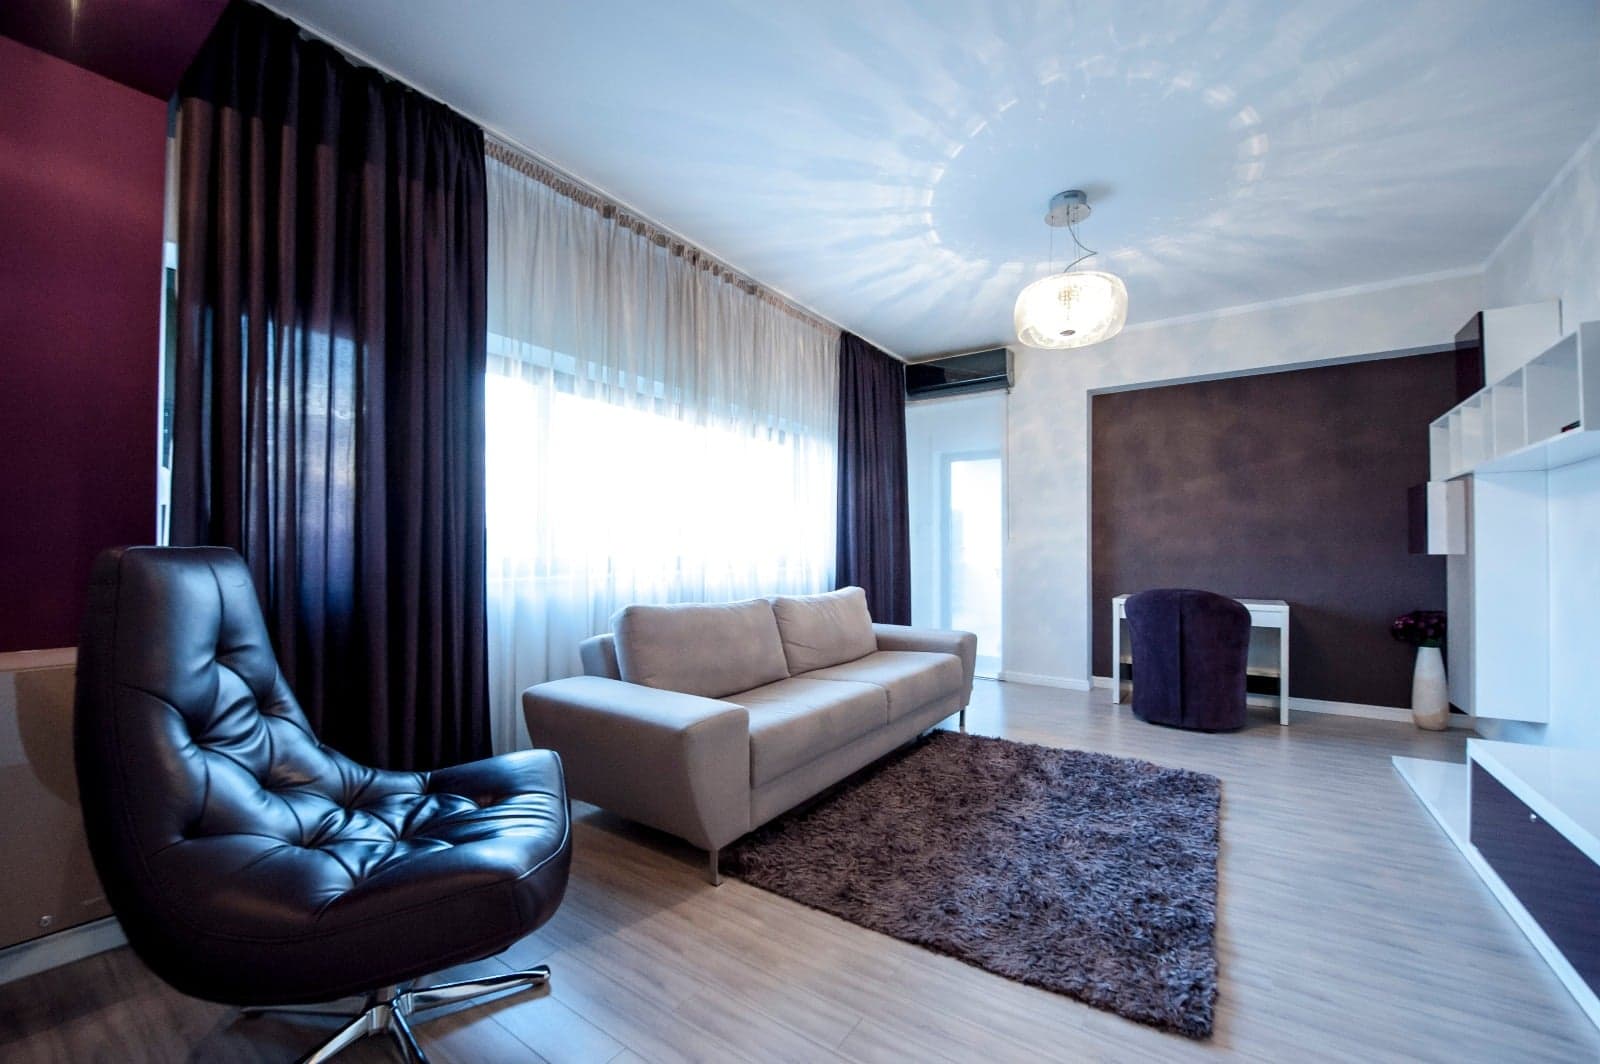 Iancu Nicolae, Apartament elegant cu 2 camere